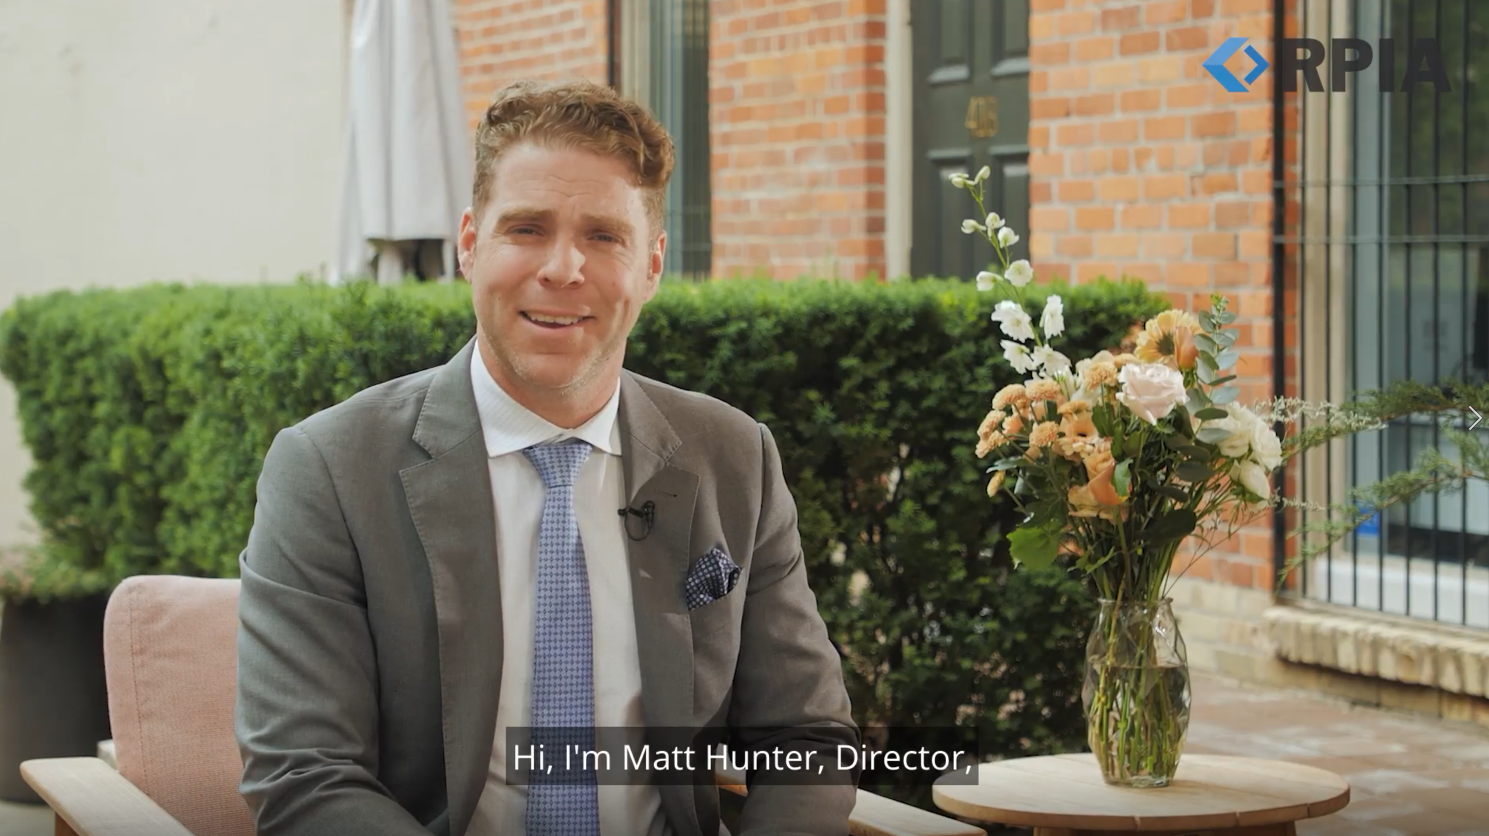 Matthew Hunter, Director, Client Portfolio Management, speaking in the video